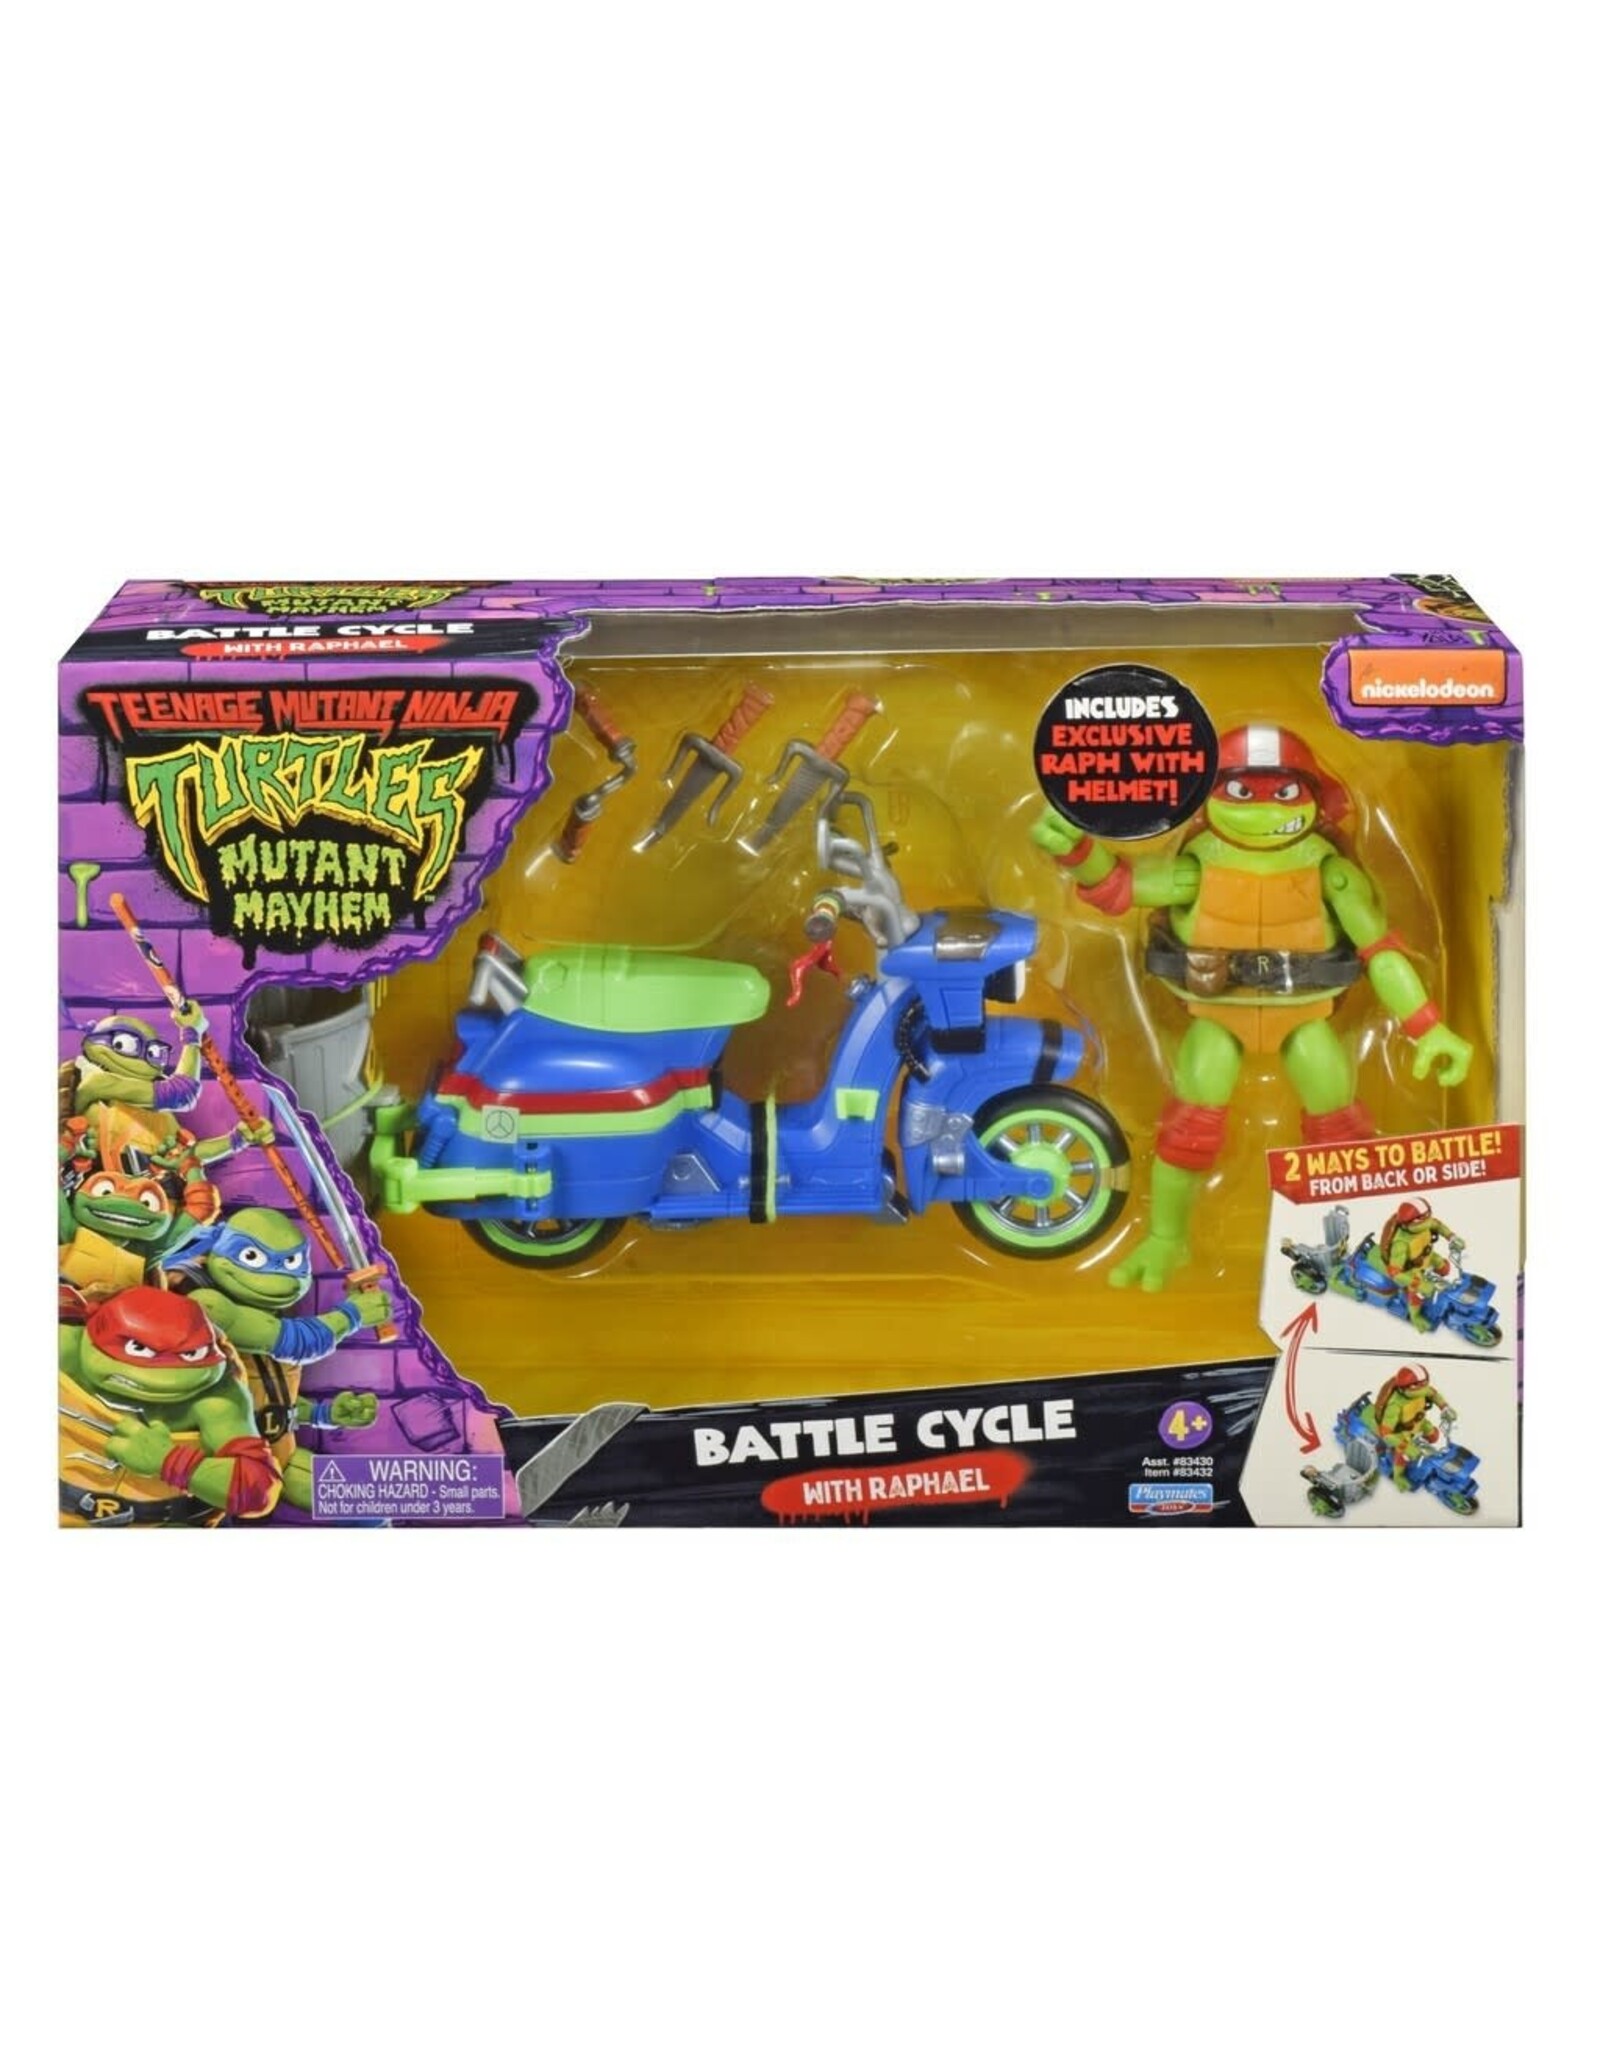 TMNT: Mutant Mayhem - Turtle Cycle with Sidecar